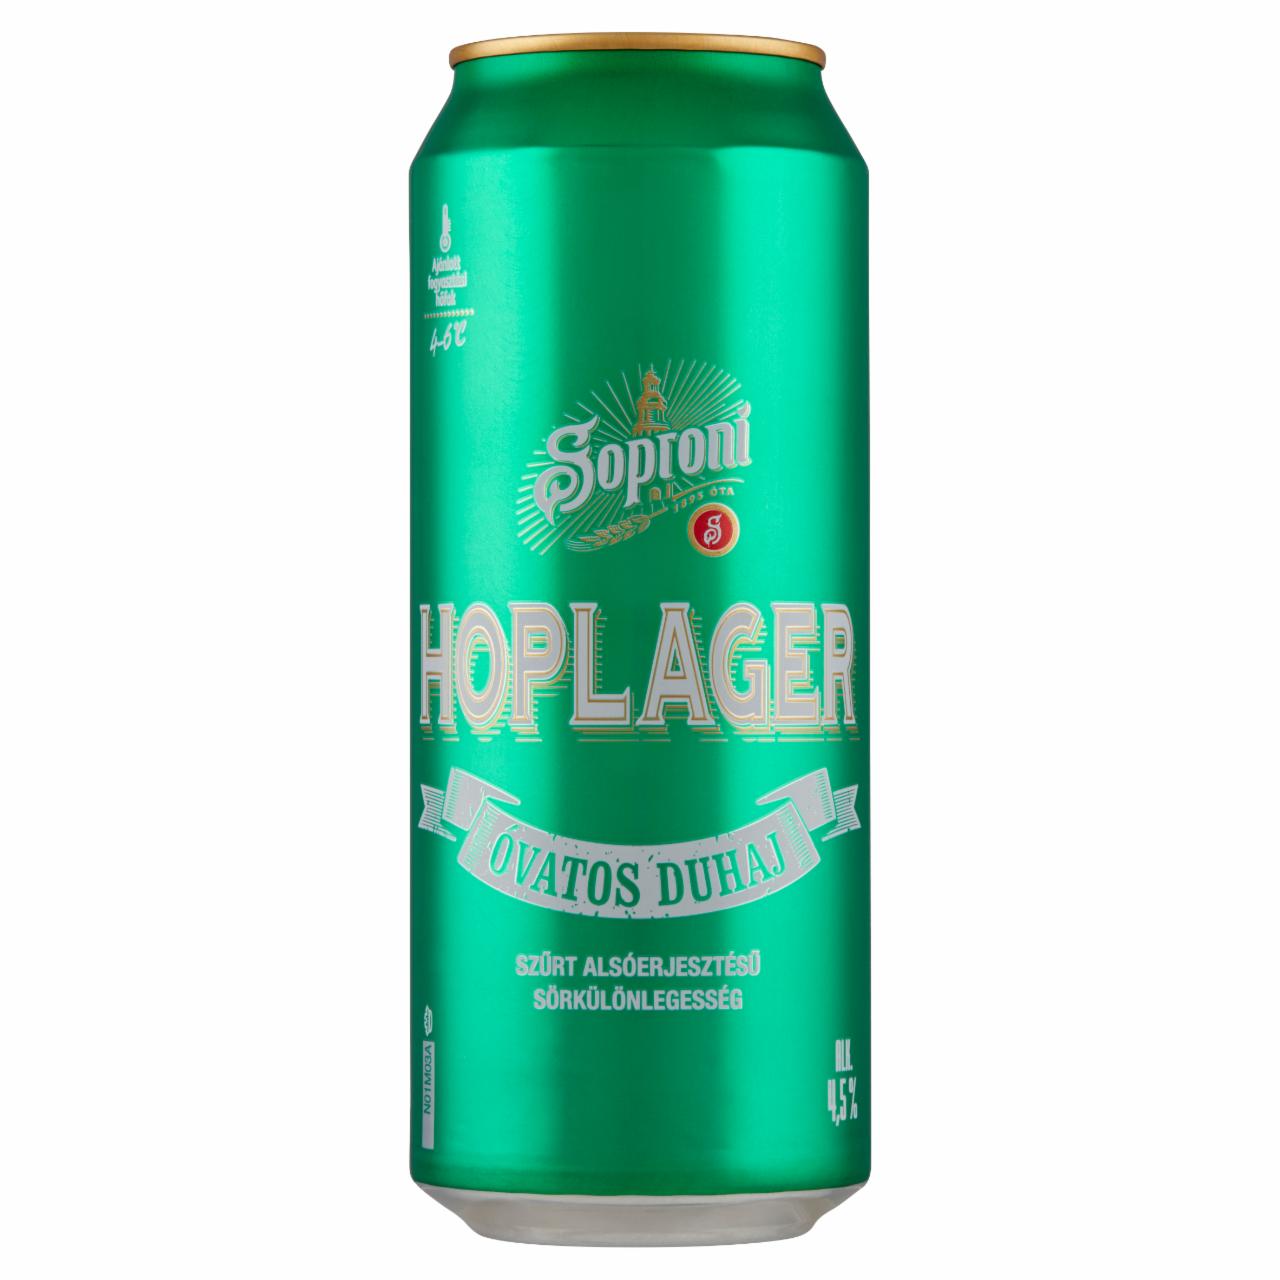 Képek - Soproni Óvatos Duhaj Hoplager szűrt alsóerjesztésű sörkülönlegesség 4,5% 0,5 l doboz